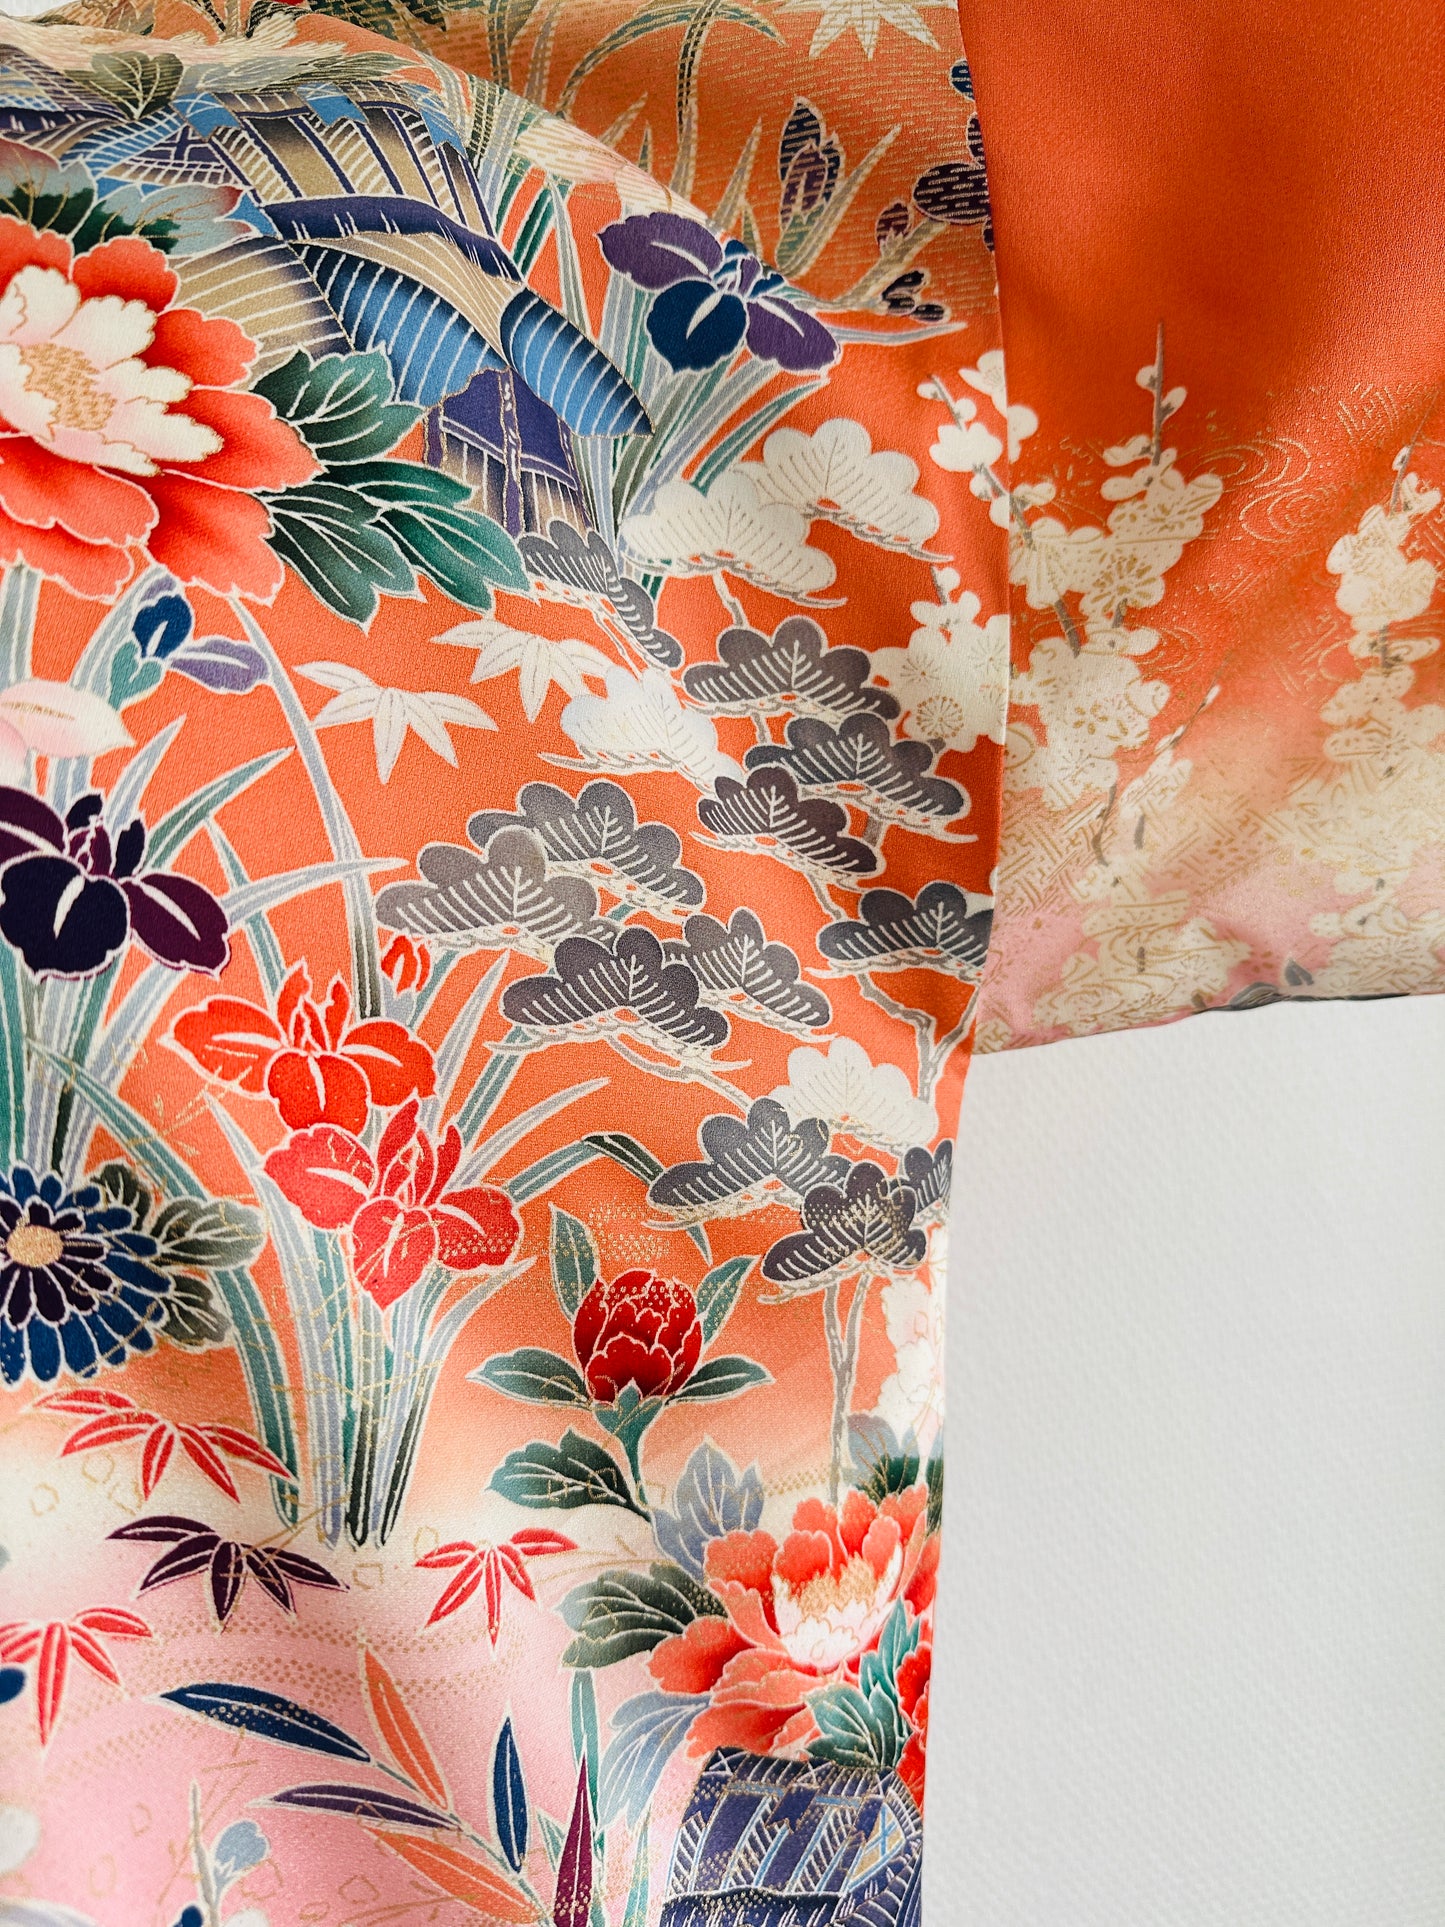 【Pinkorange, The Full Bloom of Flowers】 Happi Jacket ＜ Uitstekend ・ Silk ＞ voor mannen, voor vrouwen, Japanse Kimono, Japan unisexese kleding, unisex, Japanse geschenken, originele ontwerpen